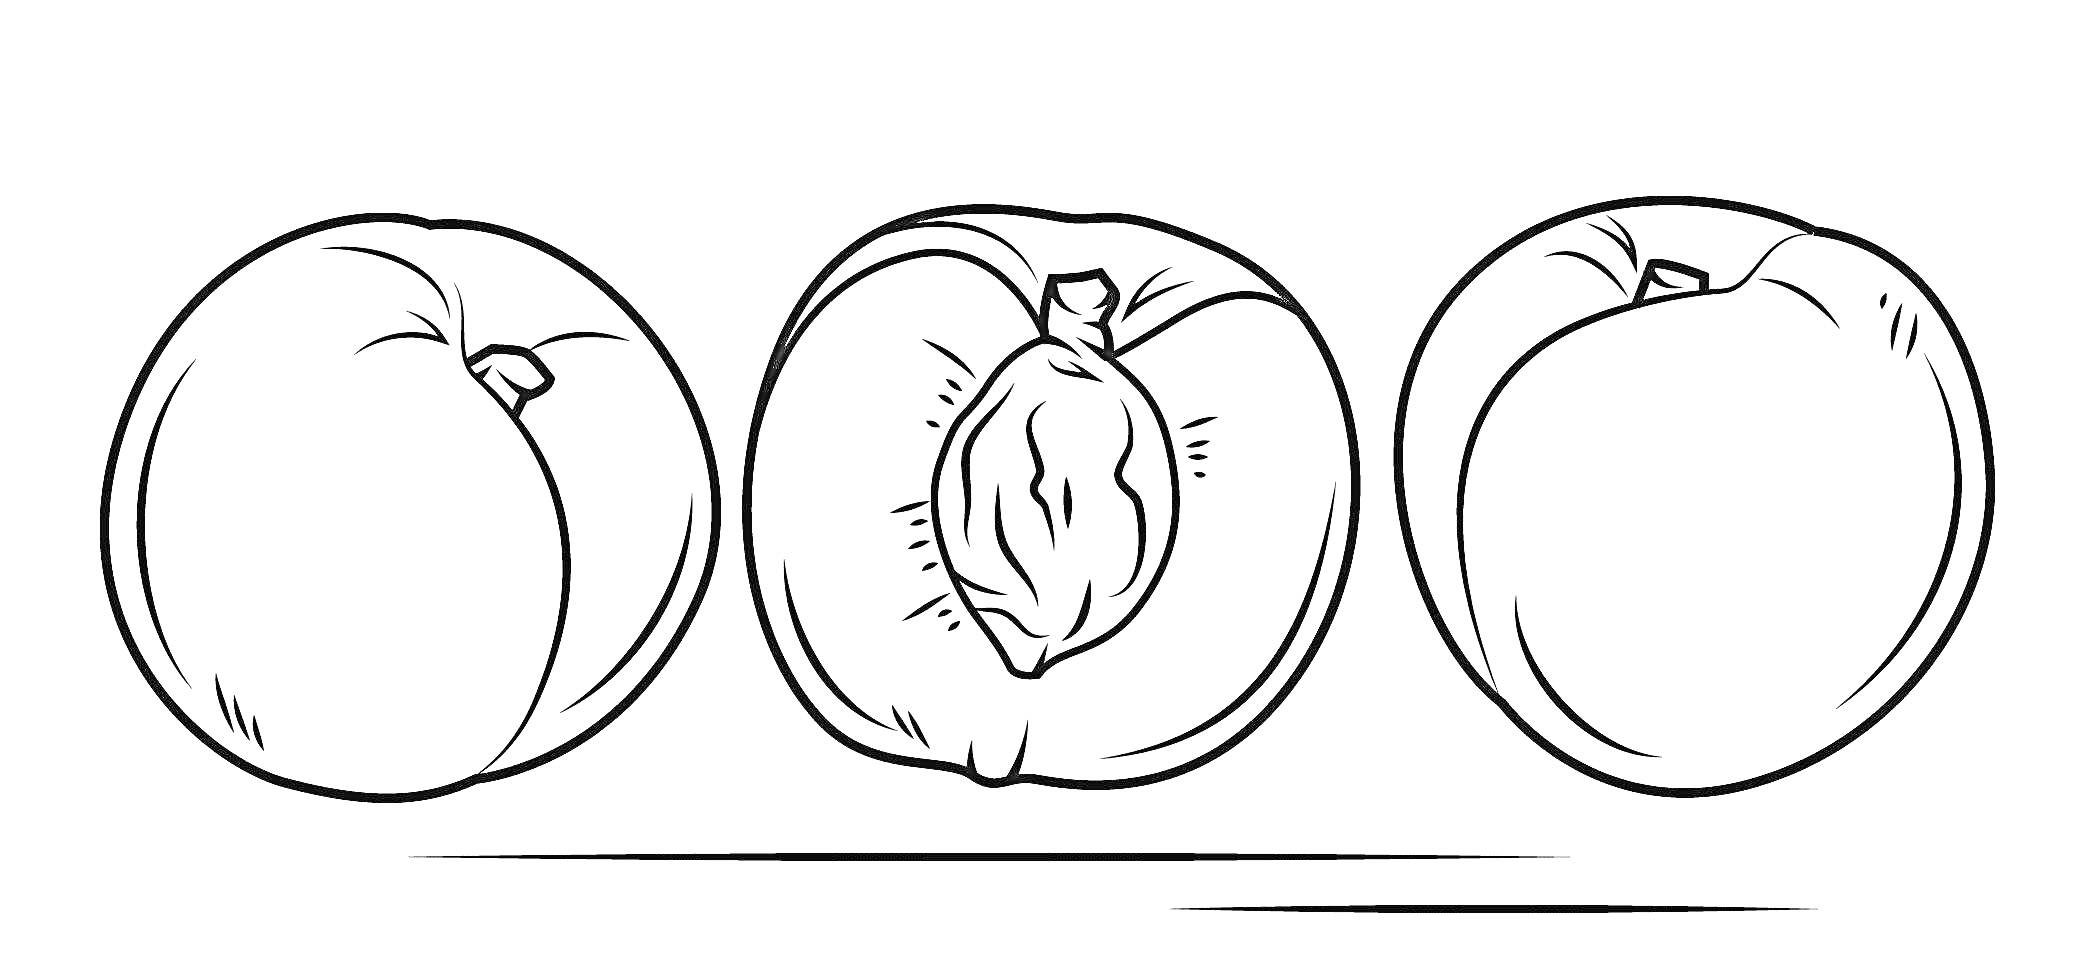 Раскраска Три персика: целый, разрезанный пополам с косточкой, целый с листочком